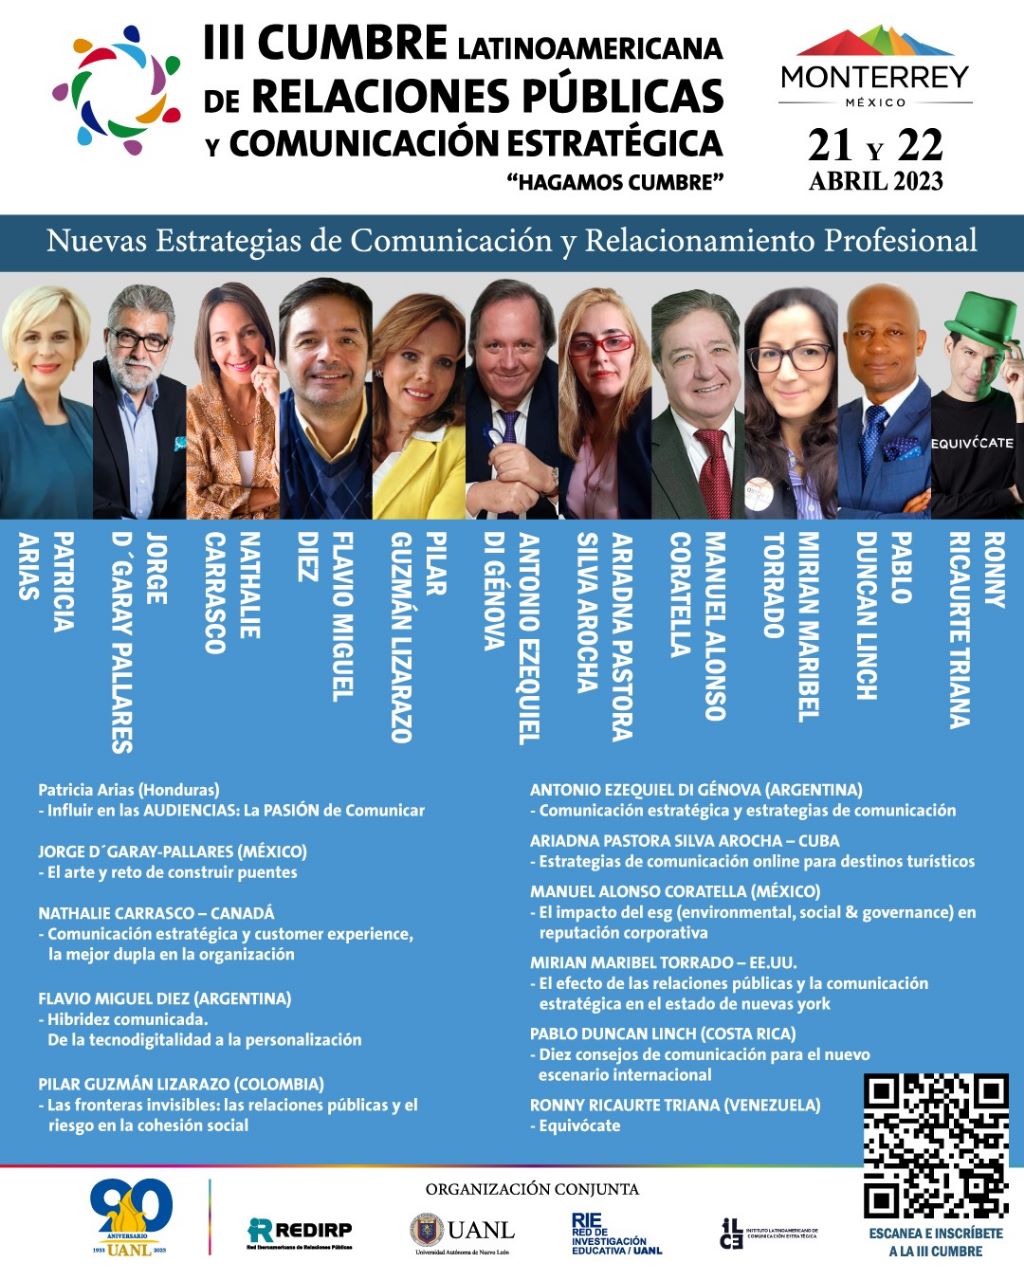 El 21 y 22 de abril en la ciudad de Monterrey, se realizará la III Cumbre Latinoamericana de Relaciones Públicas y Comunicación estratégica  “Hagamos Cumbre”